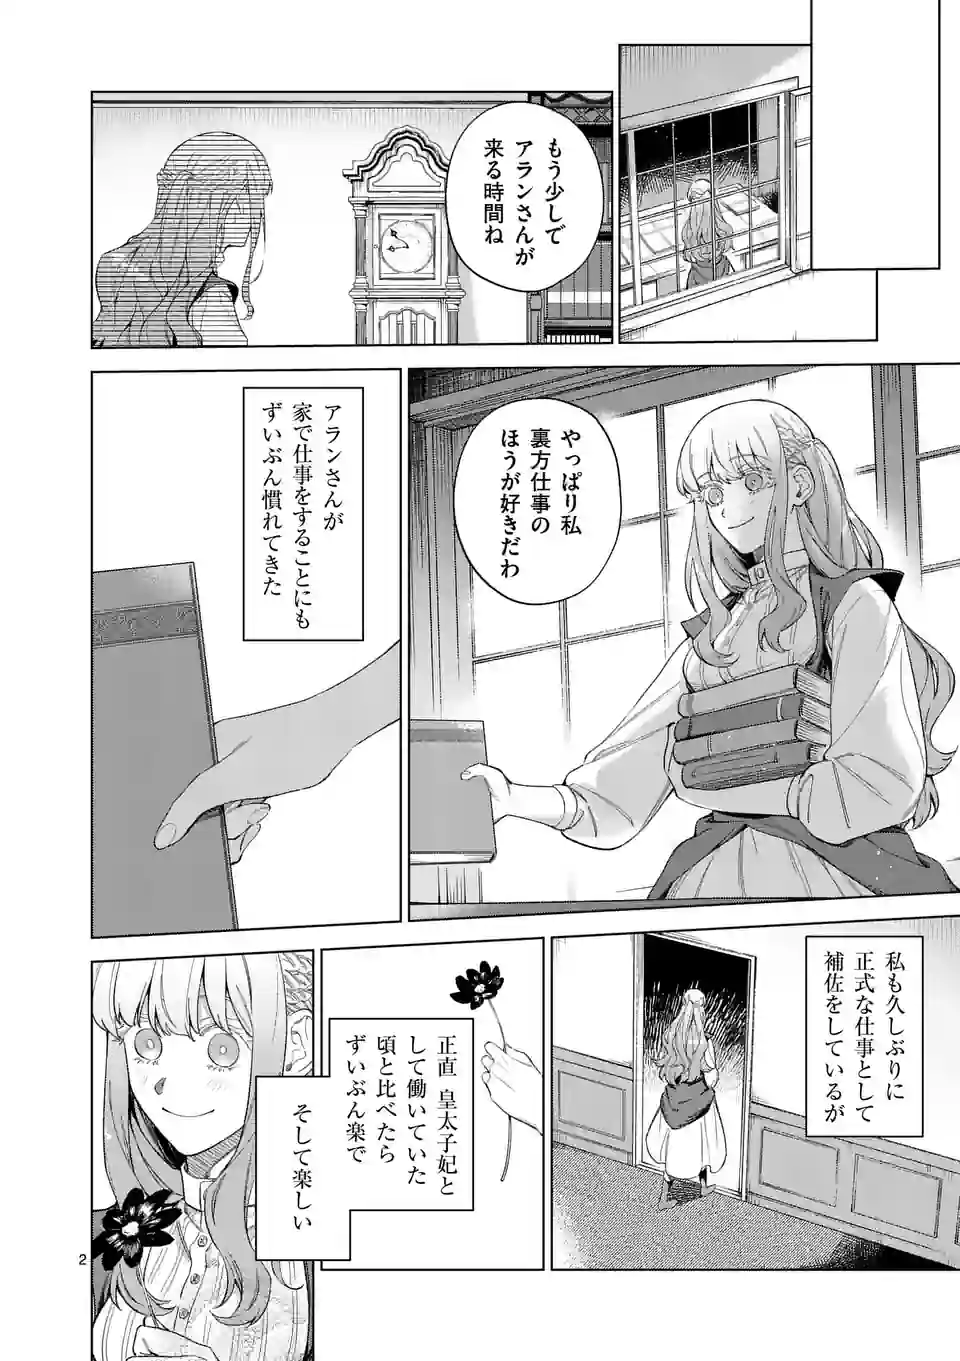 Mou Kyoumi ga Nai to Rikonsareta Reijou no Igai to Tanoshii Shinseikatsu - Chapter 8 - Page 2